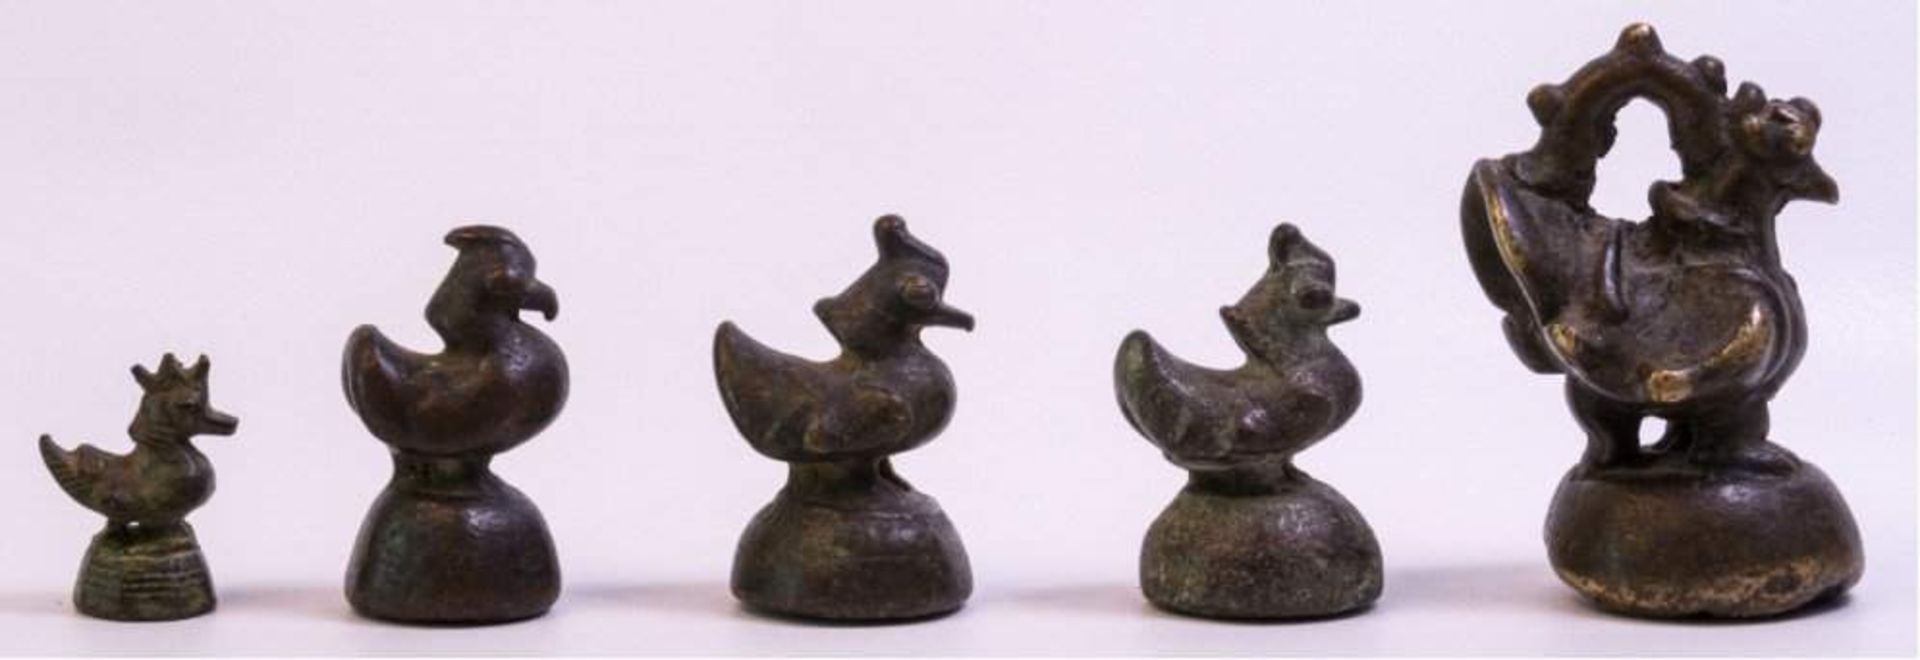 5 Opiumgewichte, Burma 17./18. Jh.Bronze, in Hühnerform, ca. H-3,5 bis 9 cm - Bild 2 aus 2